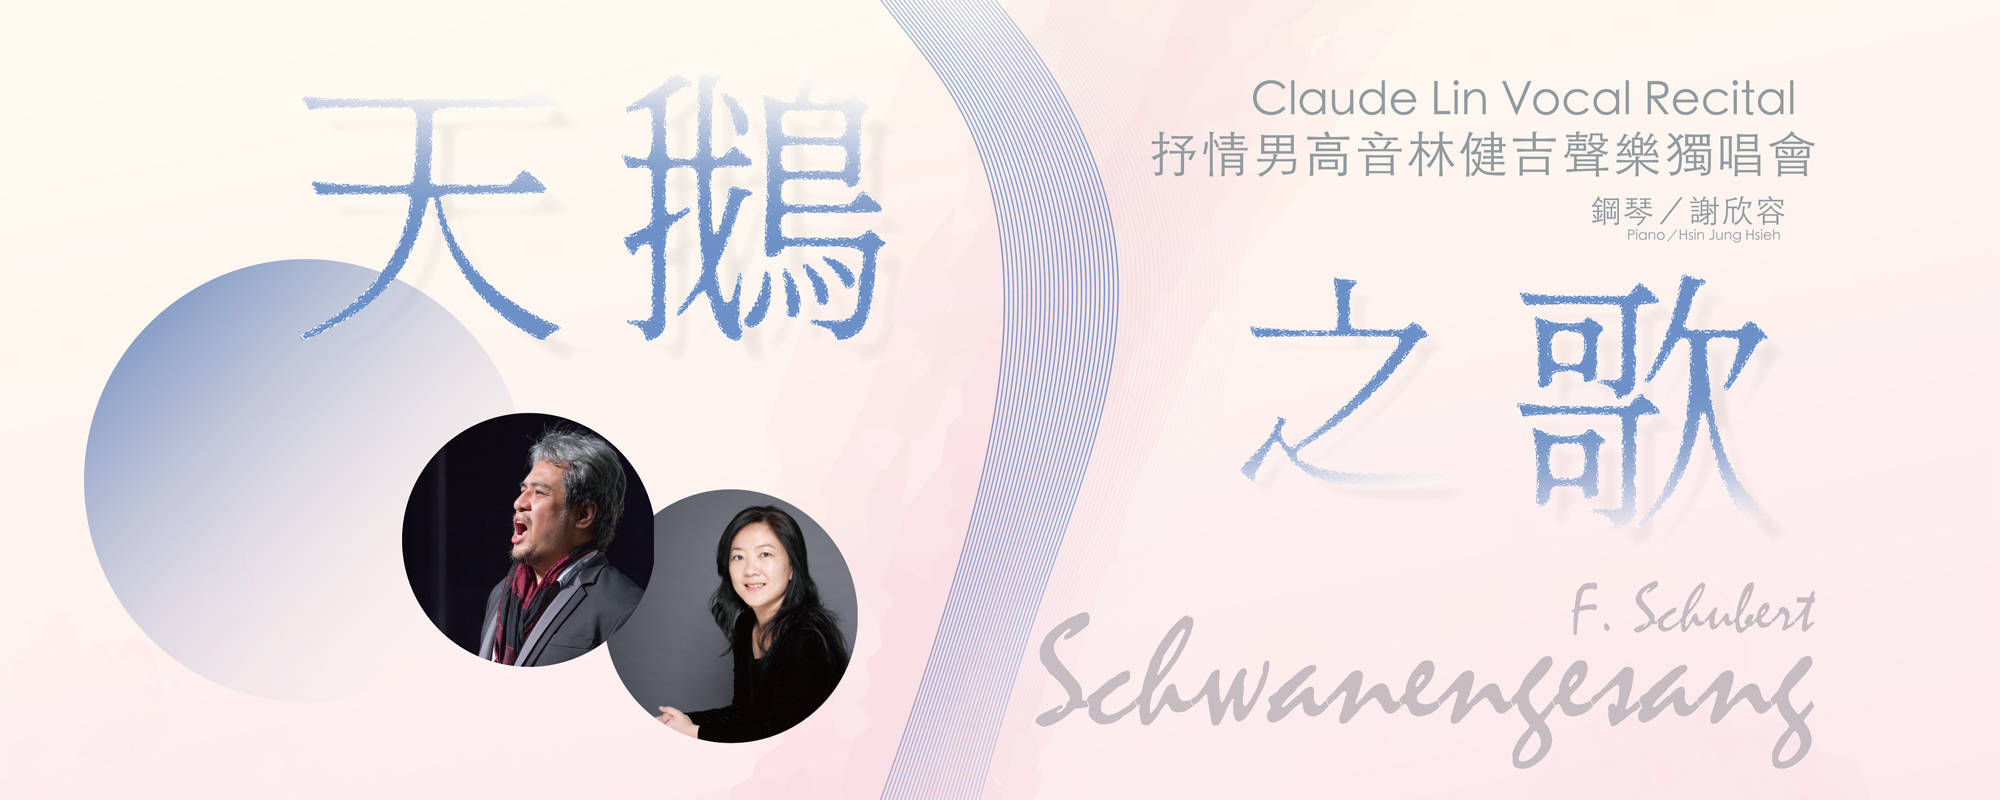 Schwanengesang- Claude Lin Vocal Recital